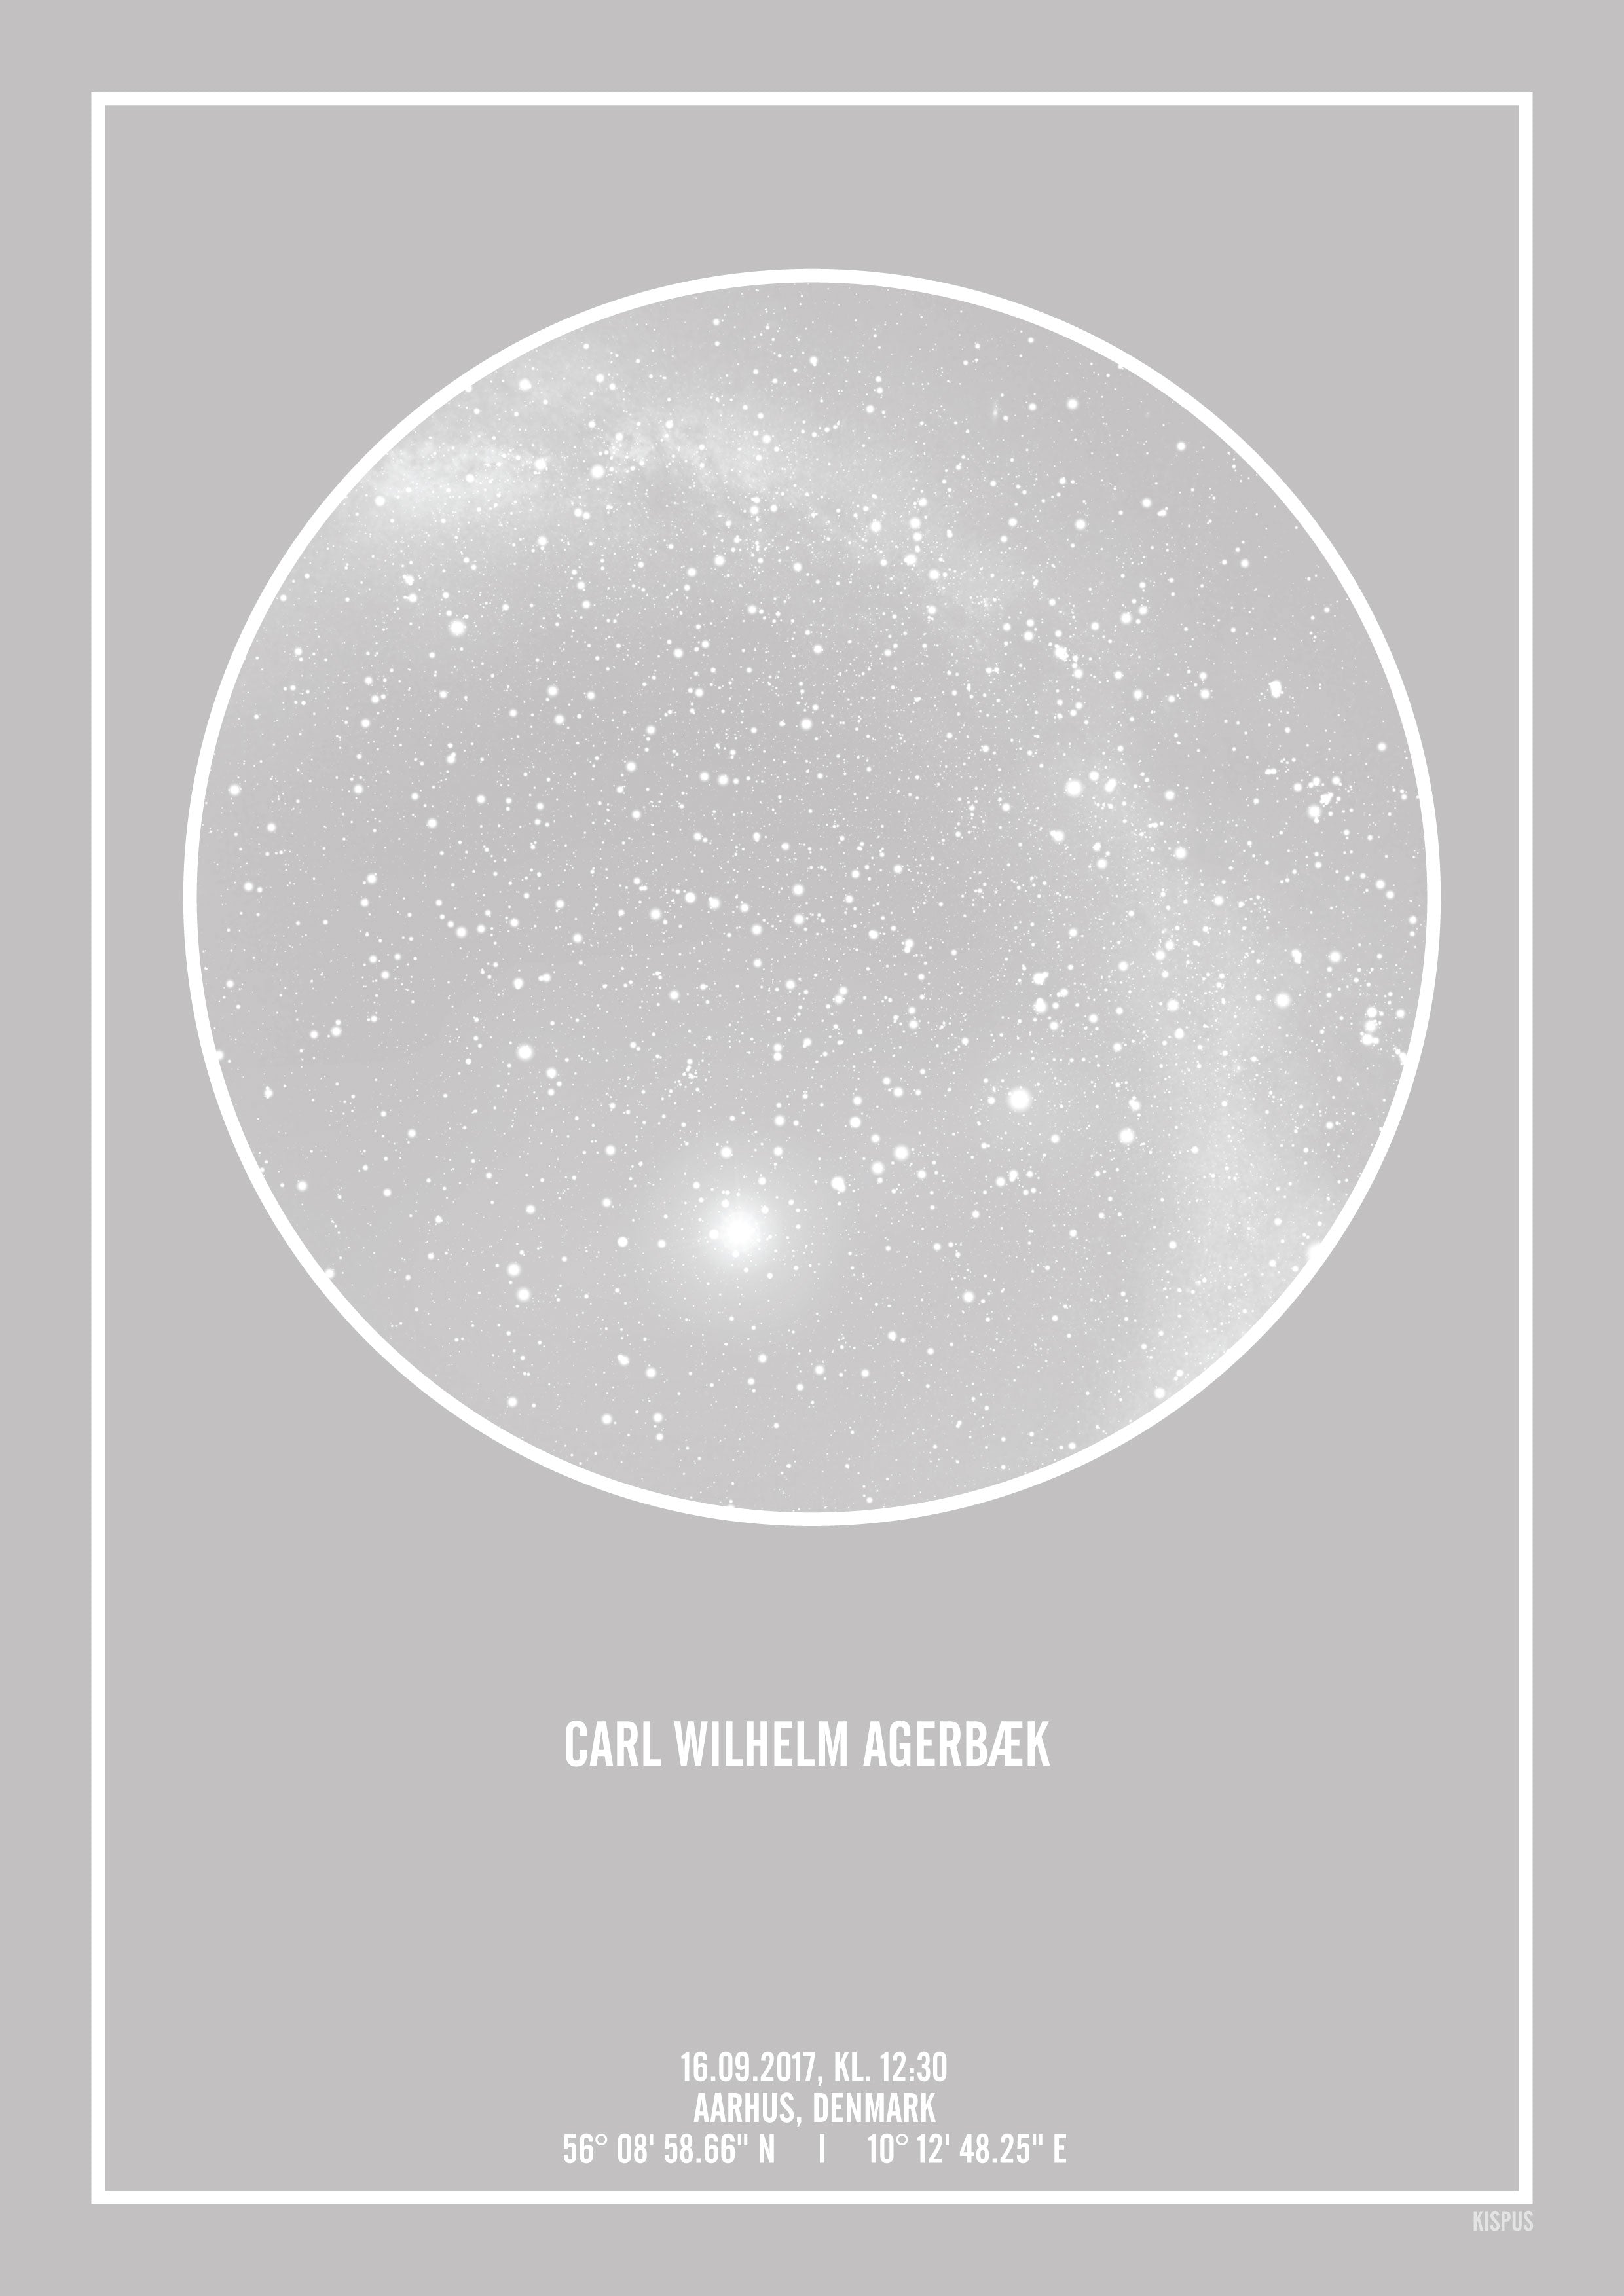 Se PERSONLIG STJERNEHIMMEL PLAKAT (LYSEGRÅ) - 30x40 / Hvid tekst + grå stjernehimmel / Stjernehimmel med Mælkevej hos KISPUS